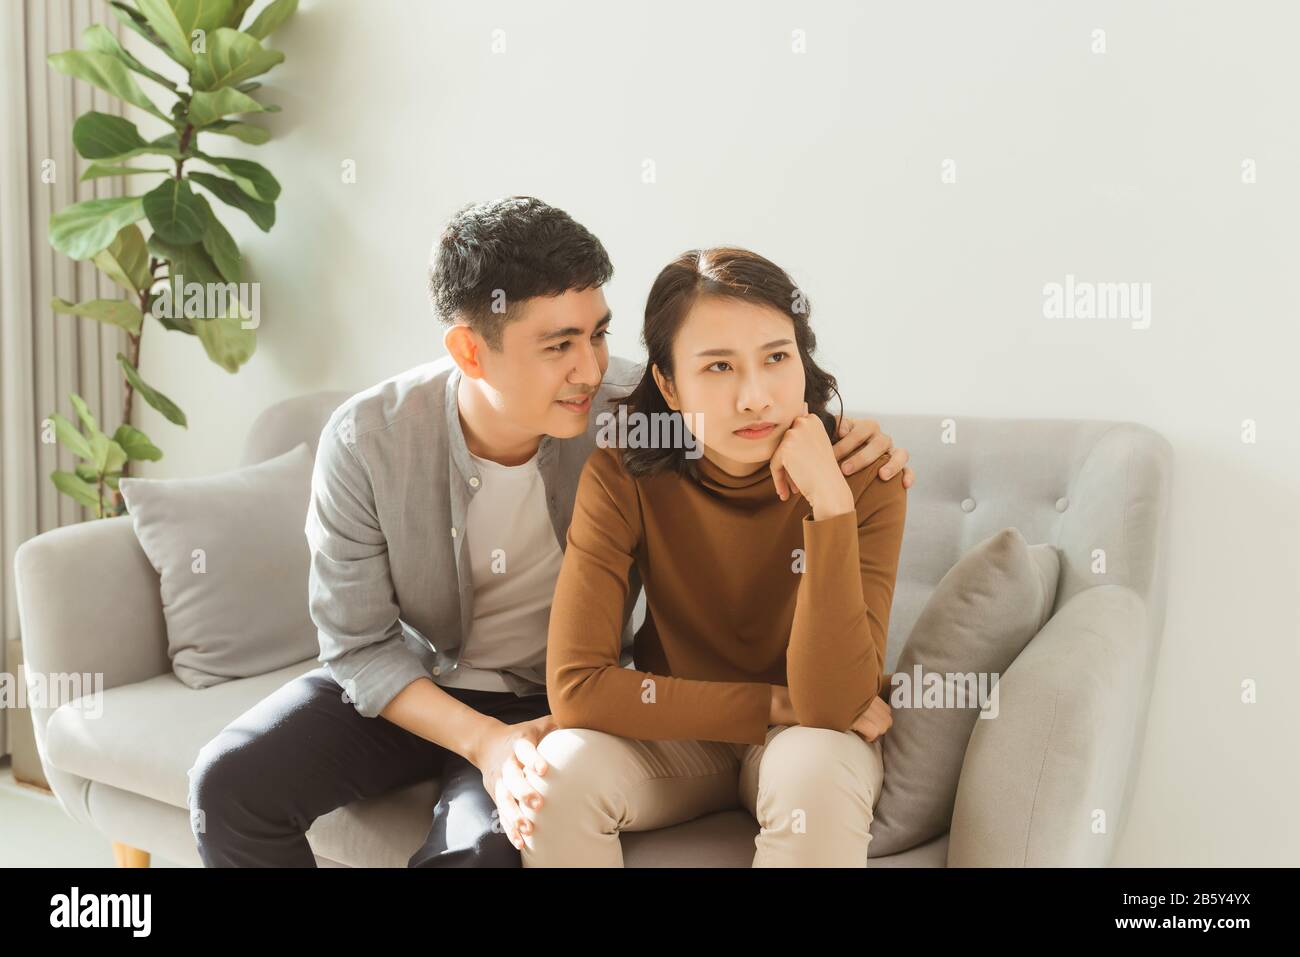 La pareja se sienta en el sofá de la esposa que cuida abraños triste marido frustrado, haciendo la paz, reconciliarse después de la lucha, problemas en la relación, la amistad y Foto de stock